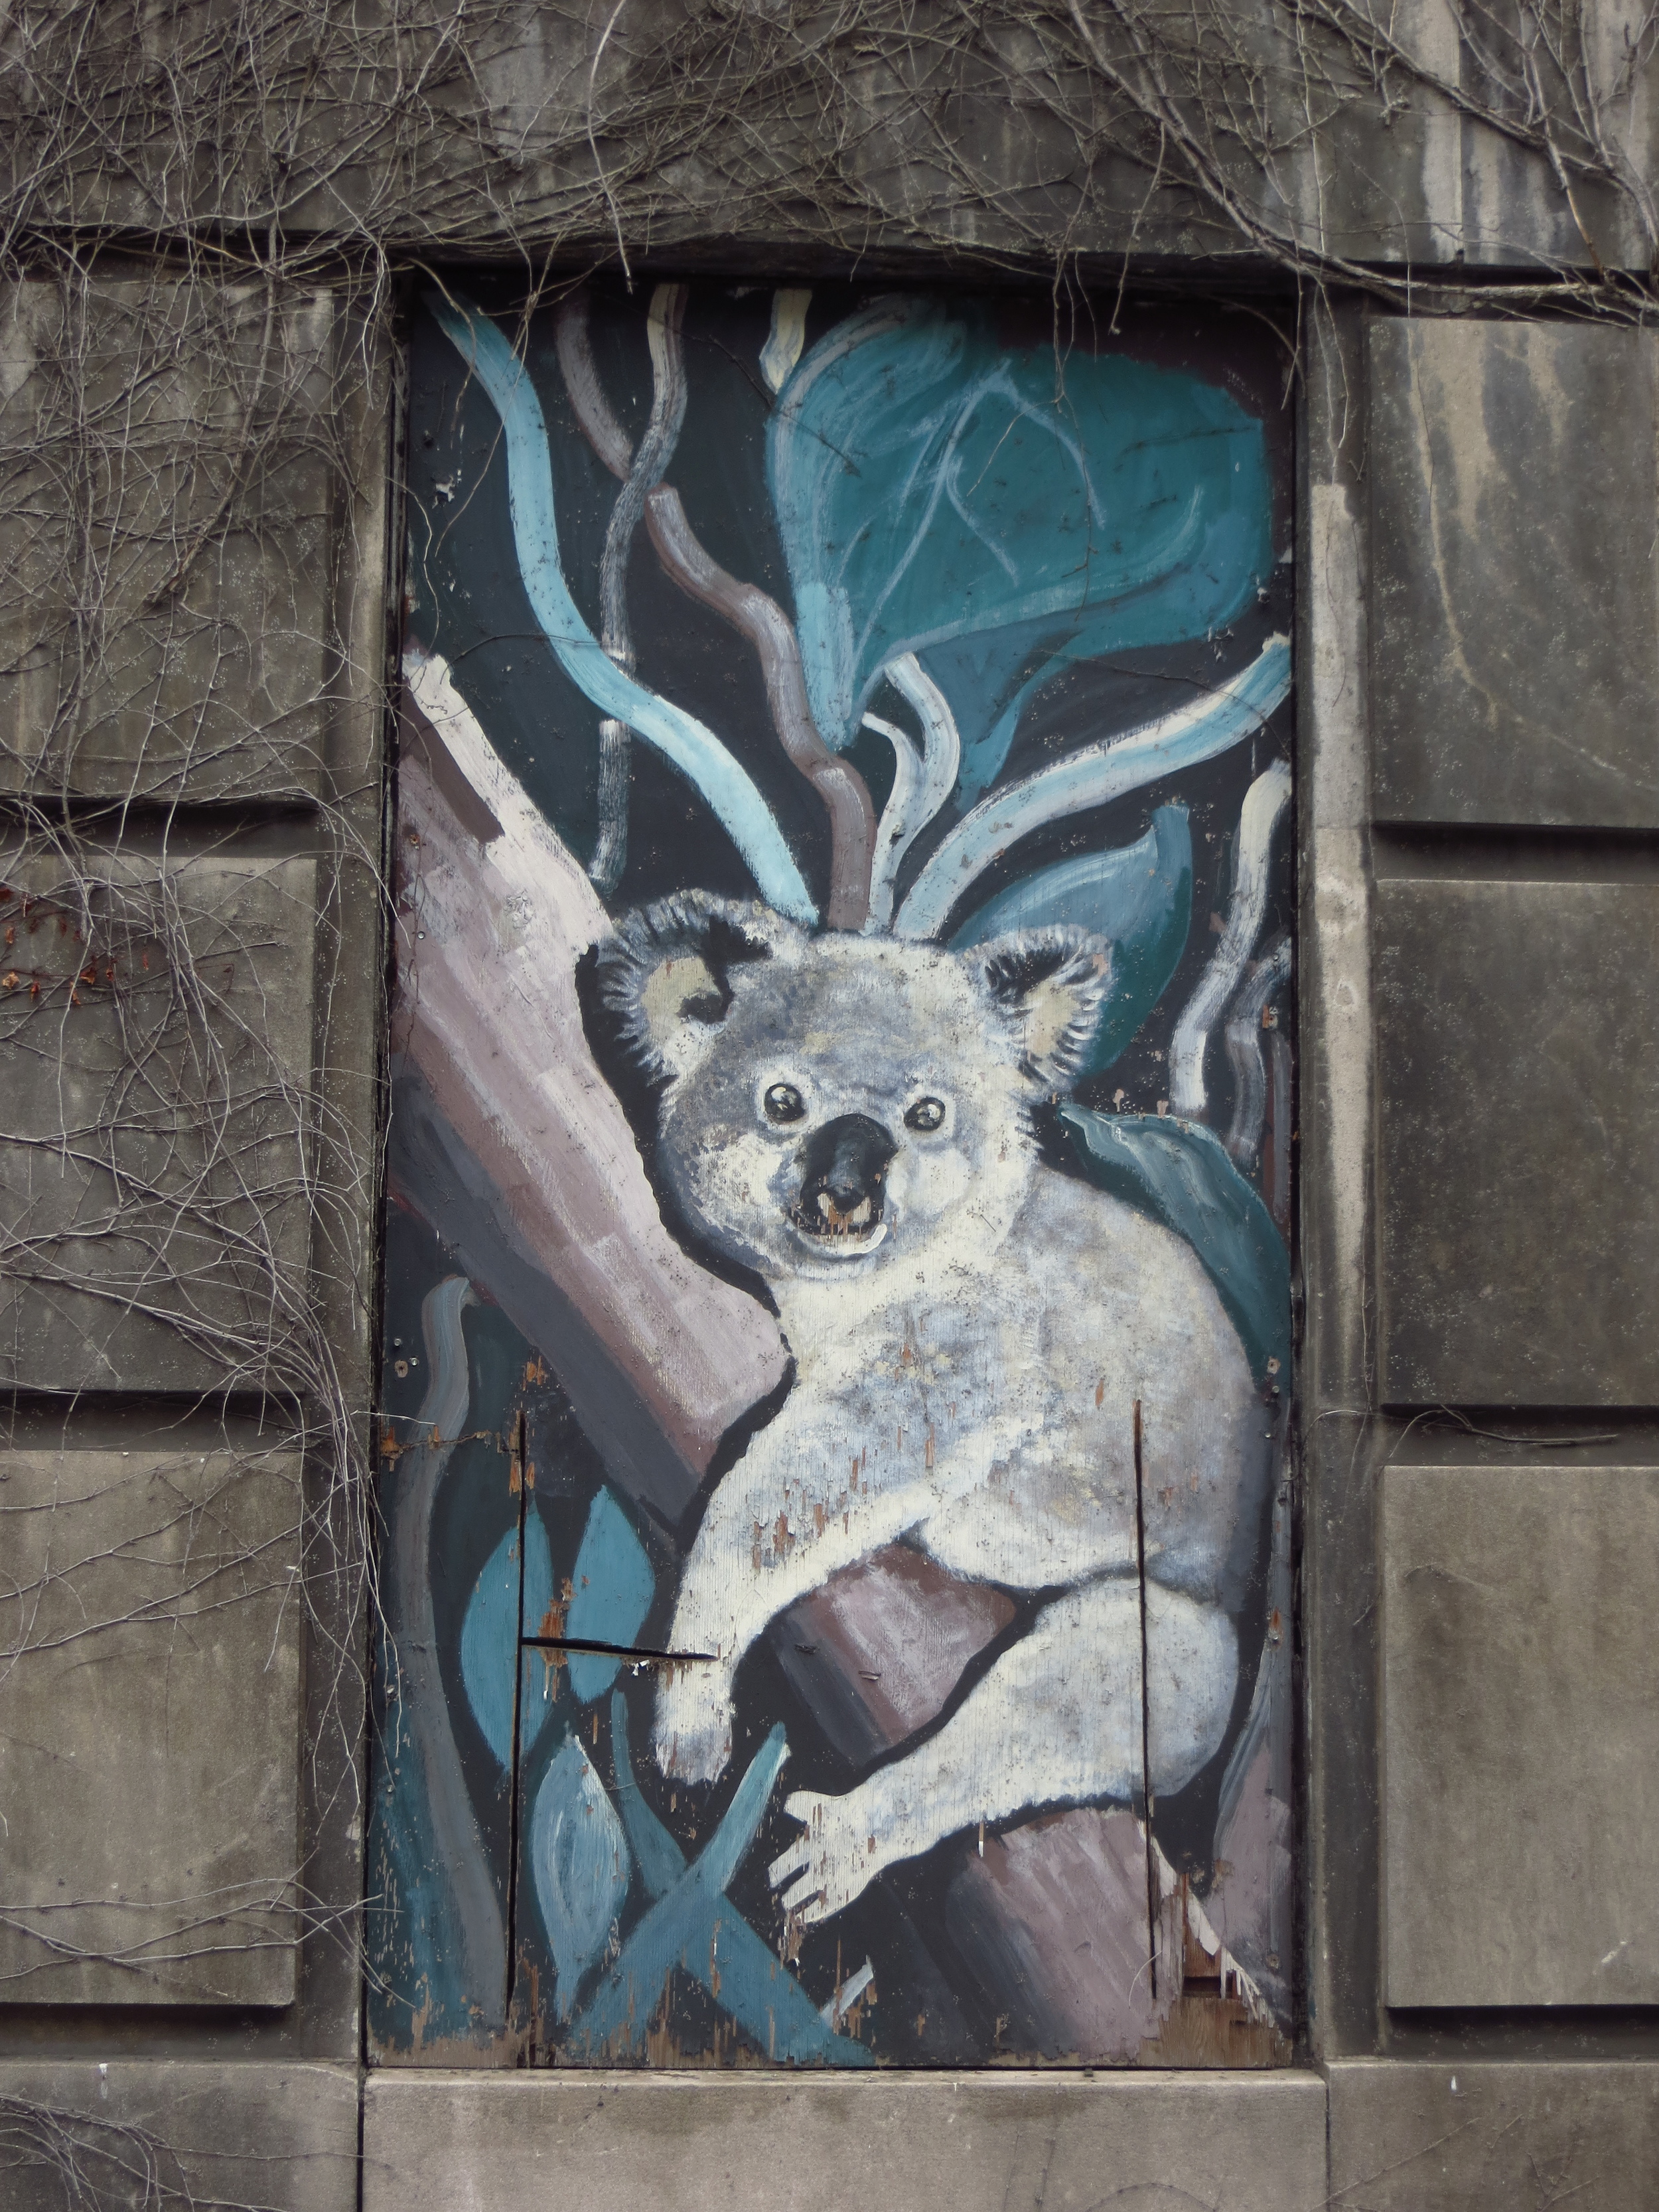 Koala on Boarded-Up Window of Former Psychiatric Hospital